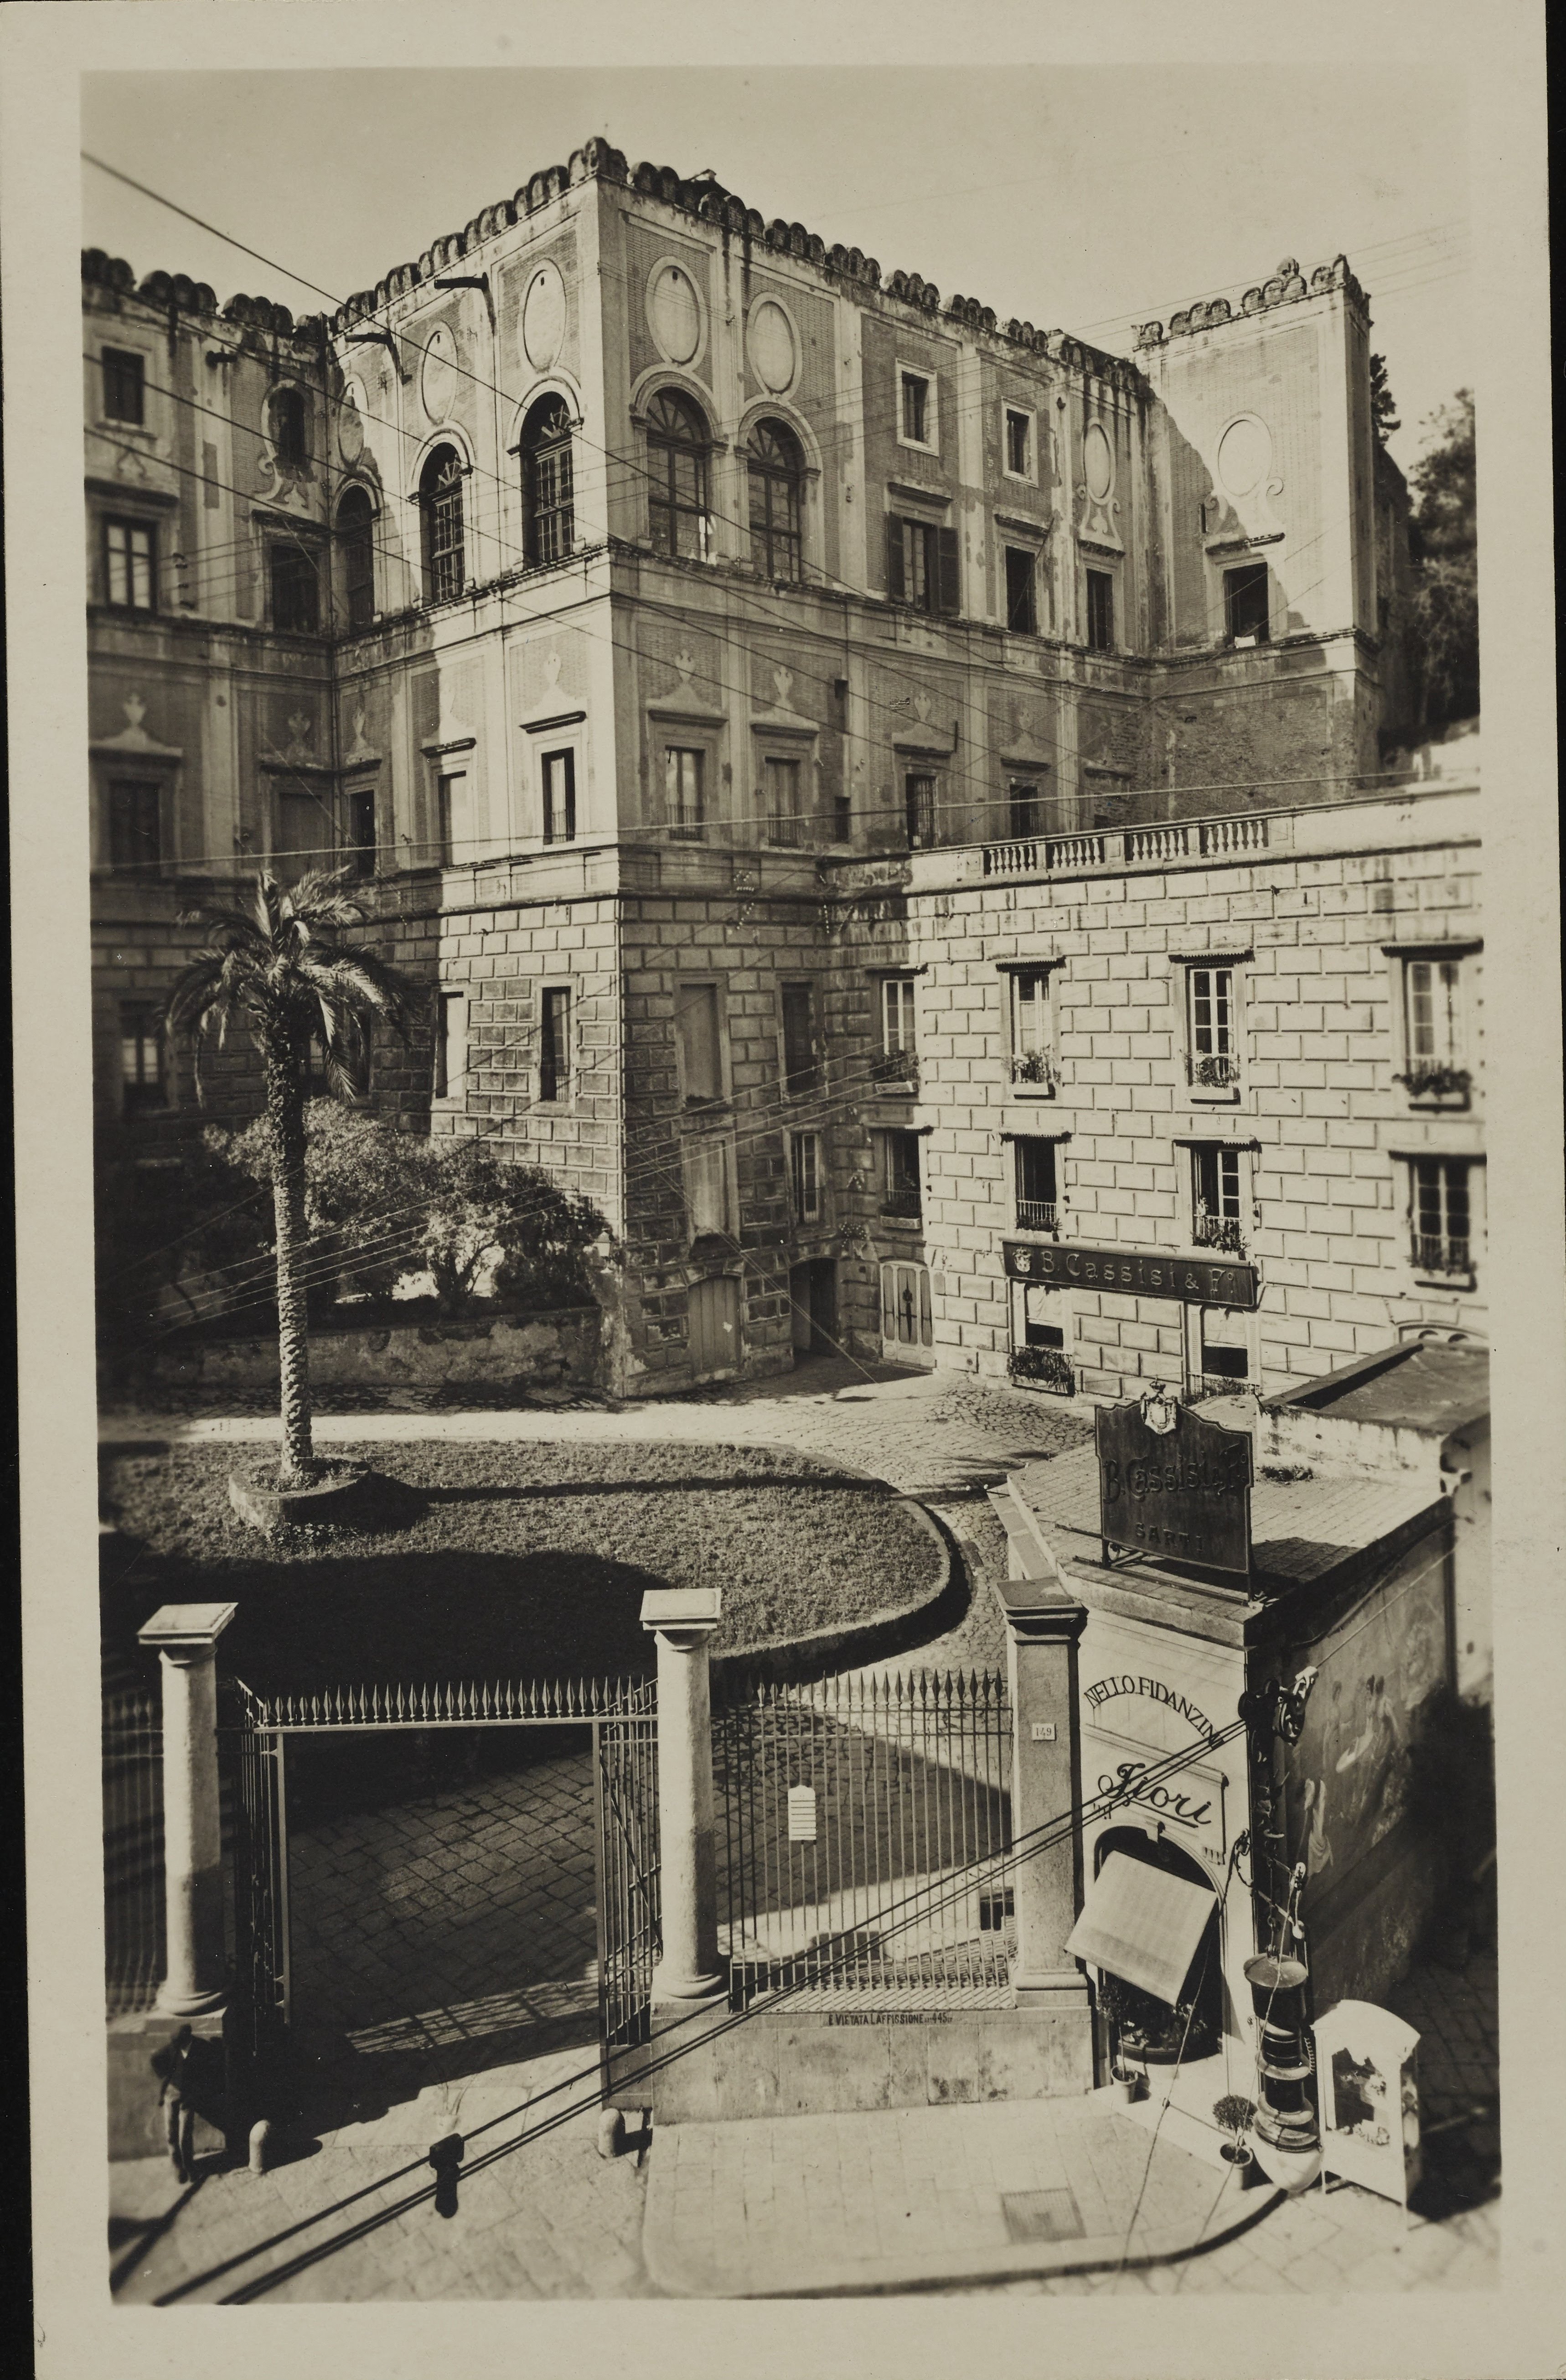 Morpurgo, Luciano, Napoli - Palazzo Cellammare, esterno, 1901-1925, gelatina ai sali d'argento, MPI6071685